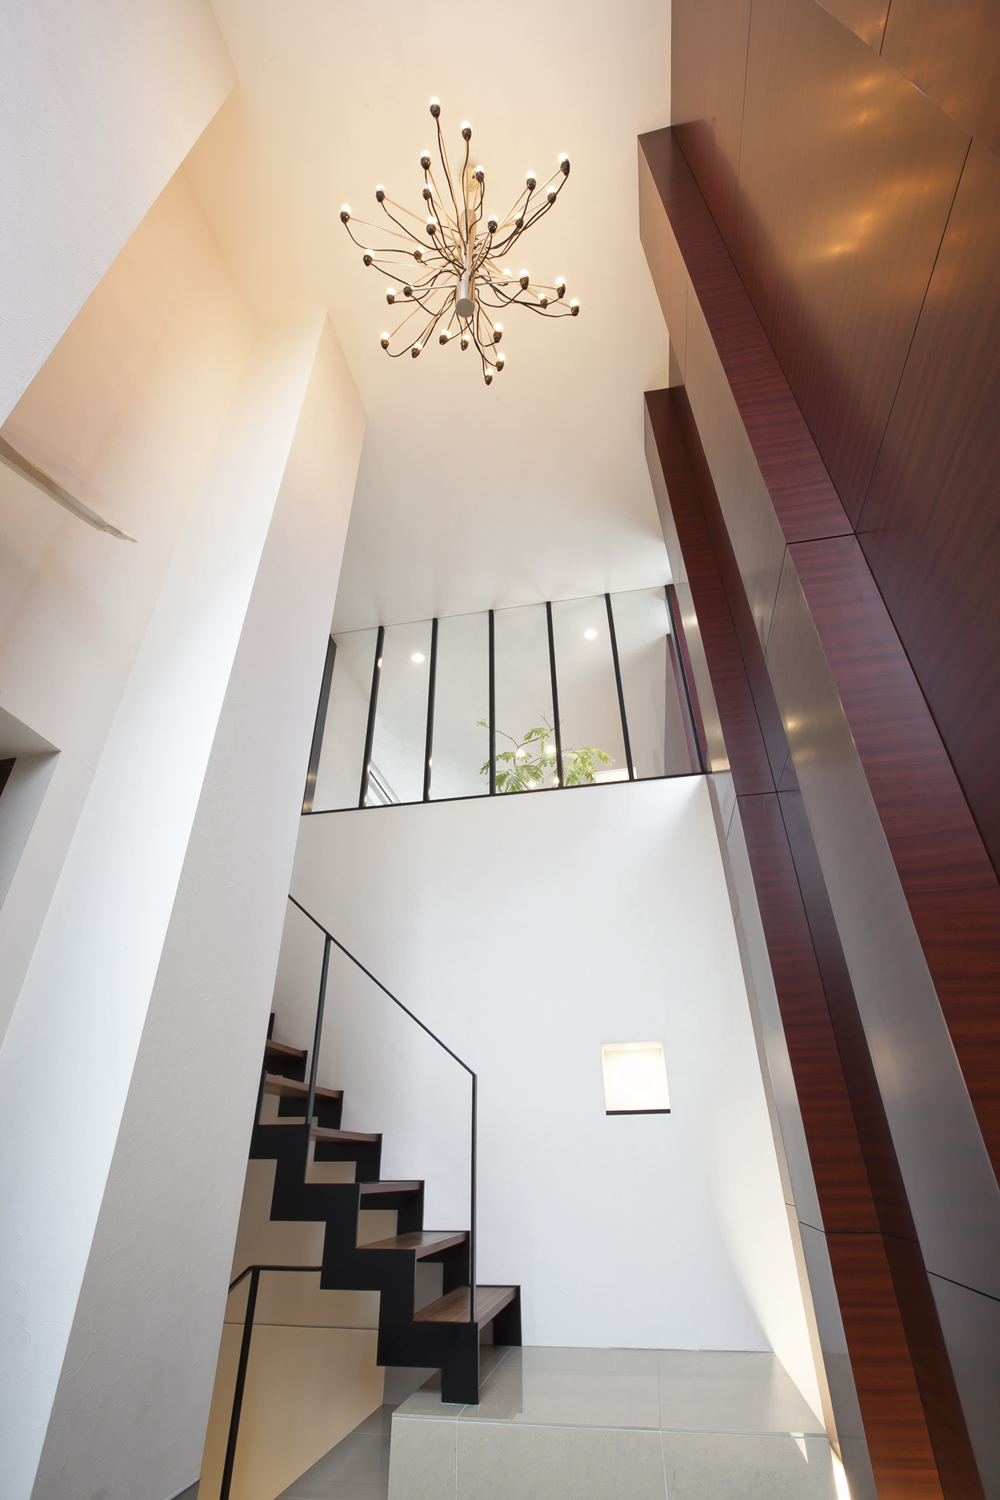 階段が敷地の高低差を解消するのと同時に、魅せる空間作りに活かされている